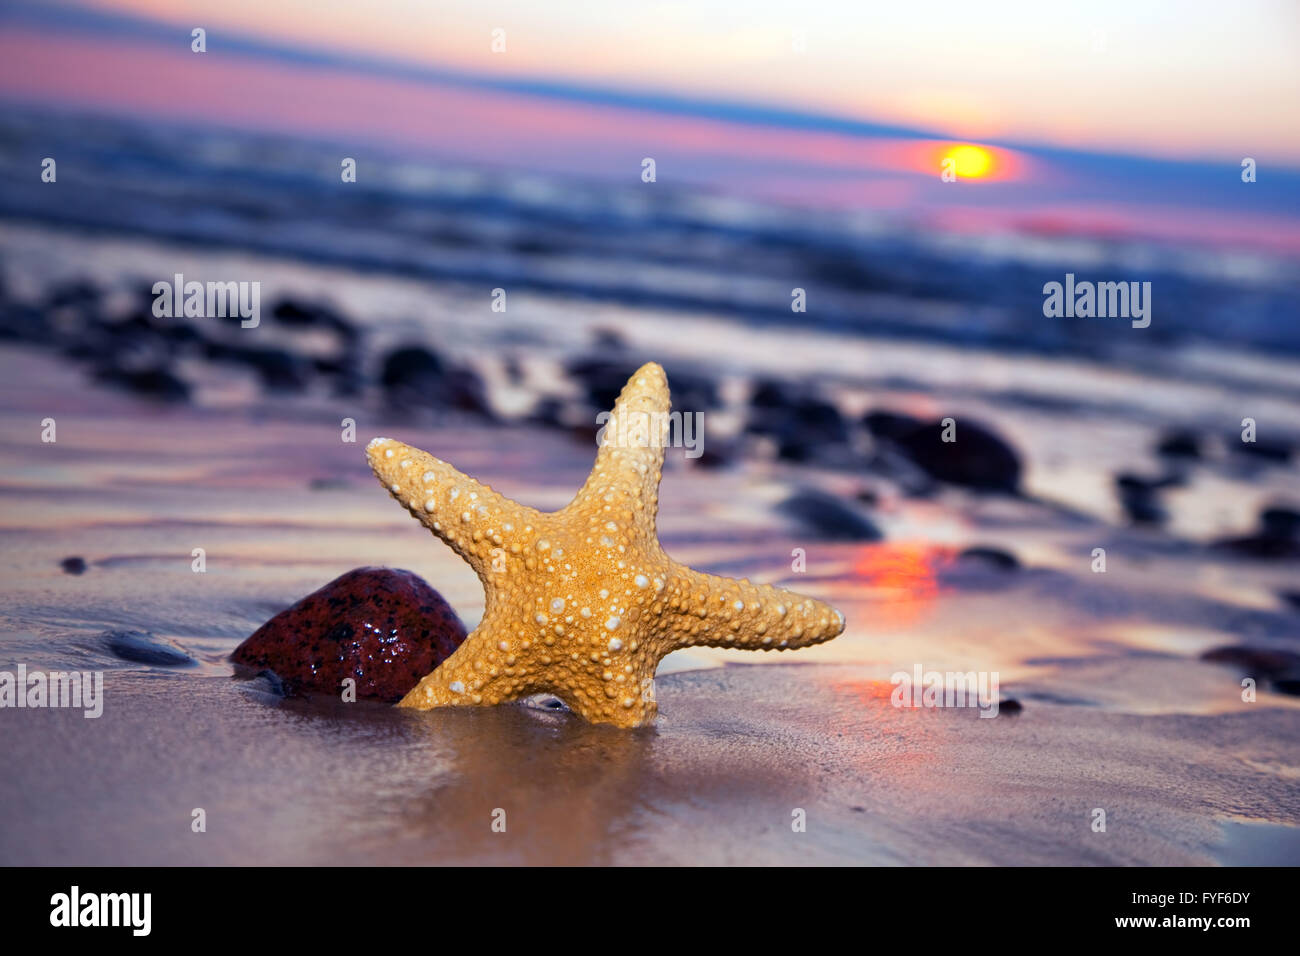 Seestern am Strand von romantischen Sonnenuntergang Stockfoto